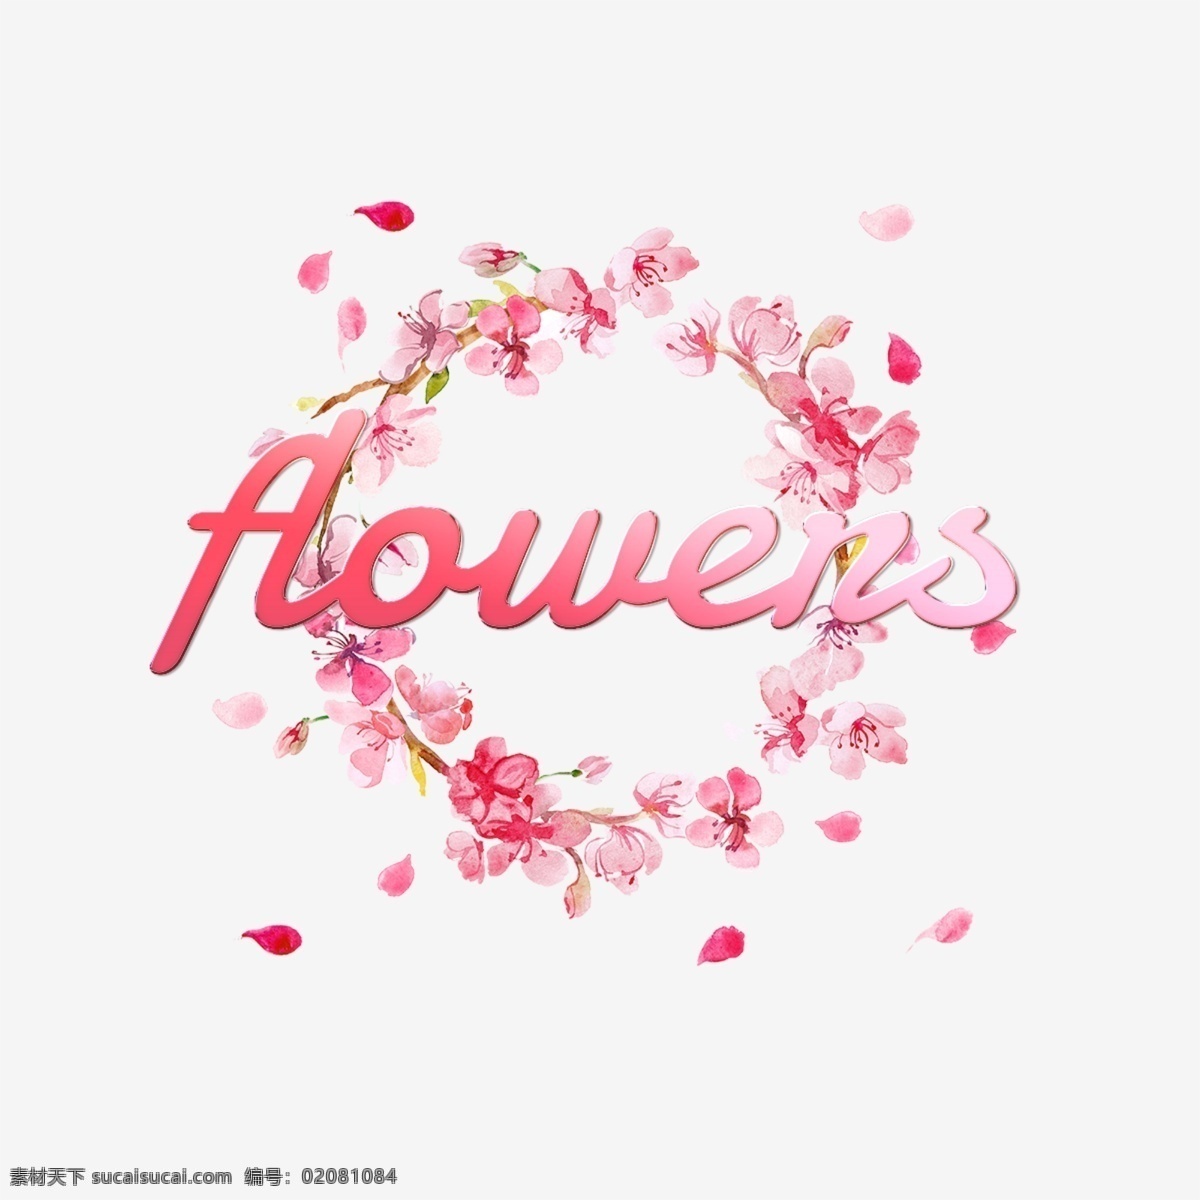 美丽 花朵 抽象 字体 粉红色 花环 花卉 粉 花圈 梅花 爱 亮 颜色 浪漫 婚礼 背景 字形 书法 绘画